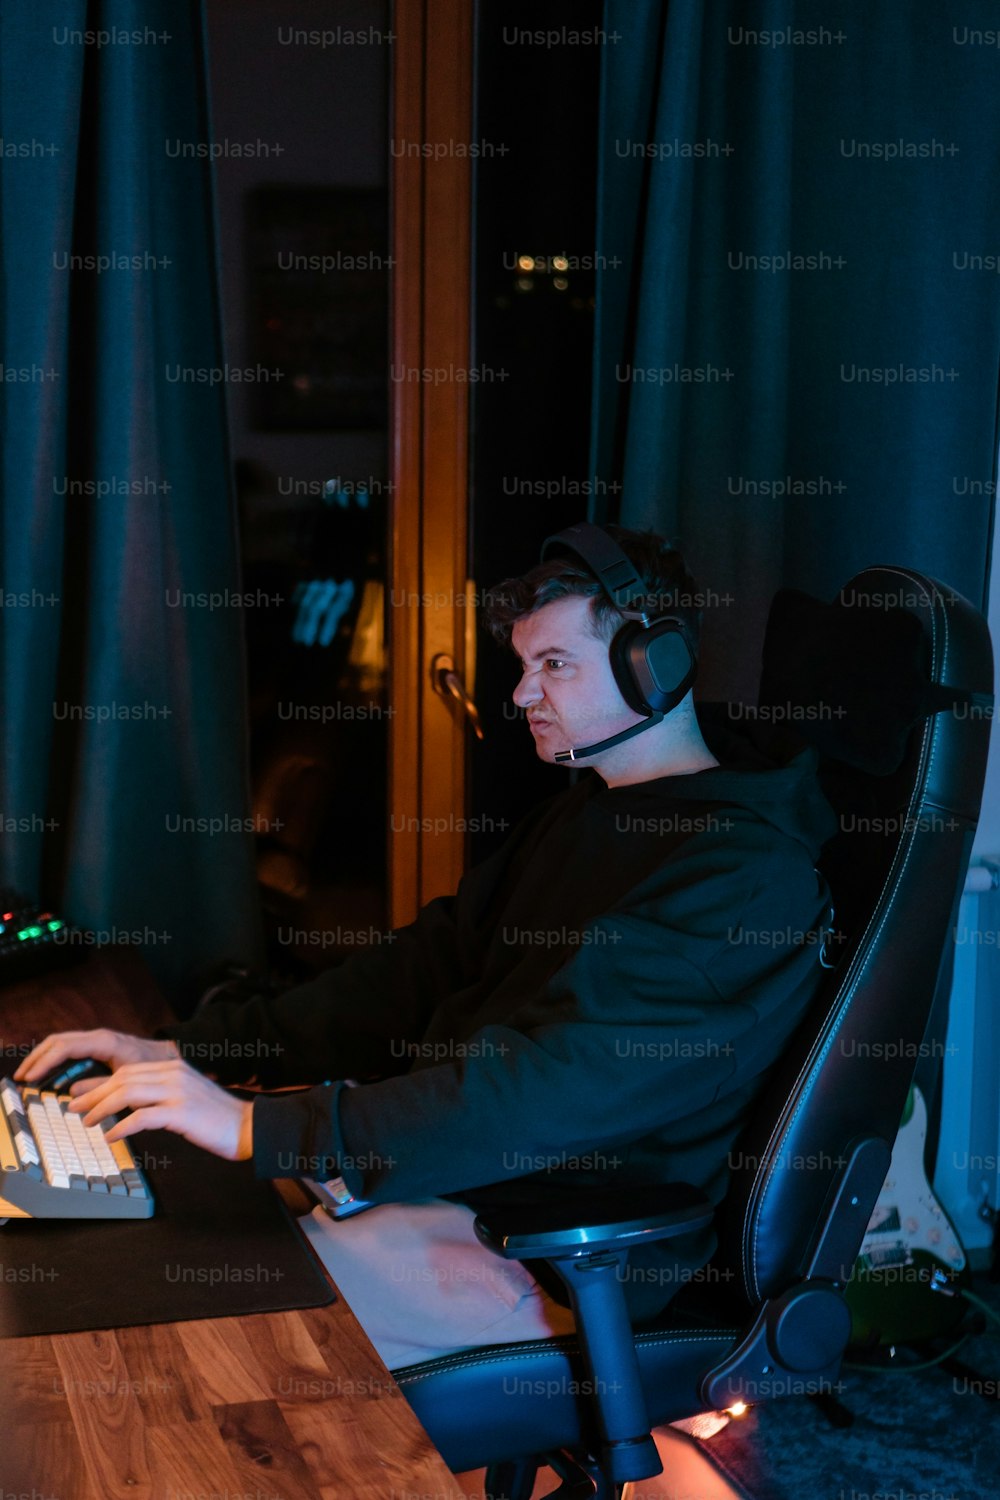 ノートパソコンとヘッドフォンをつけて机に座っている男性